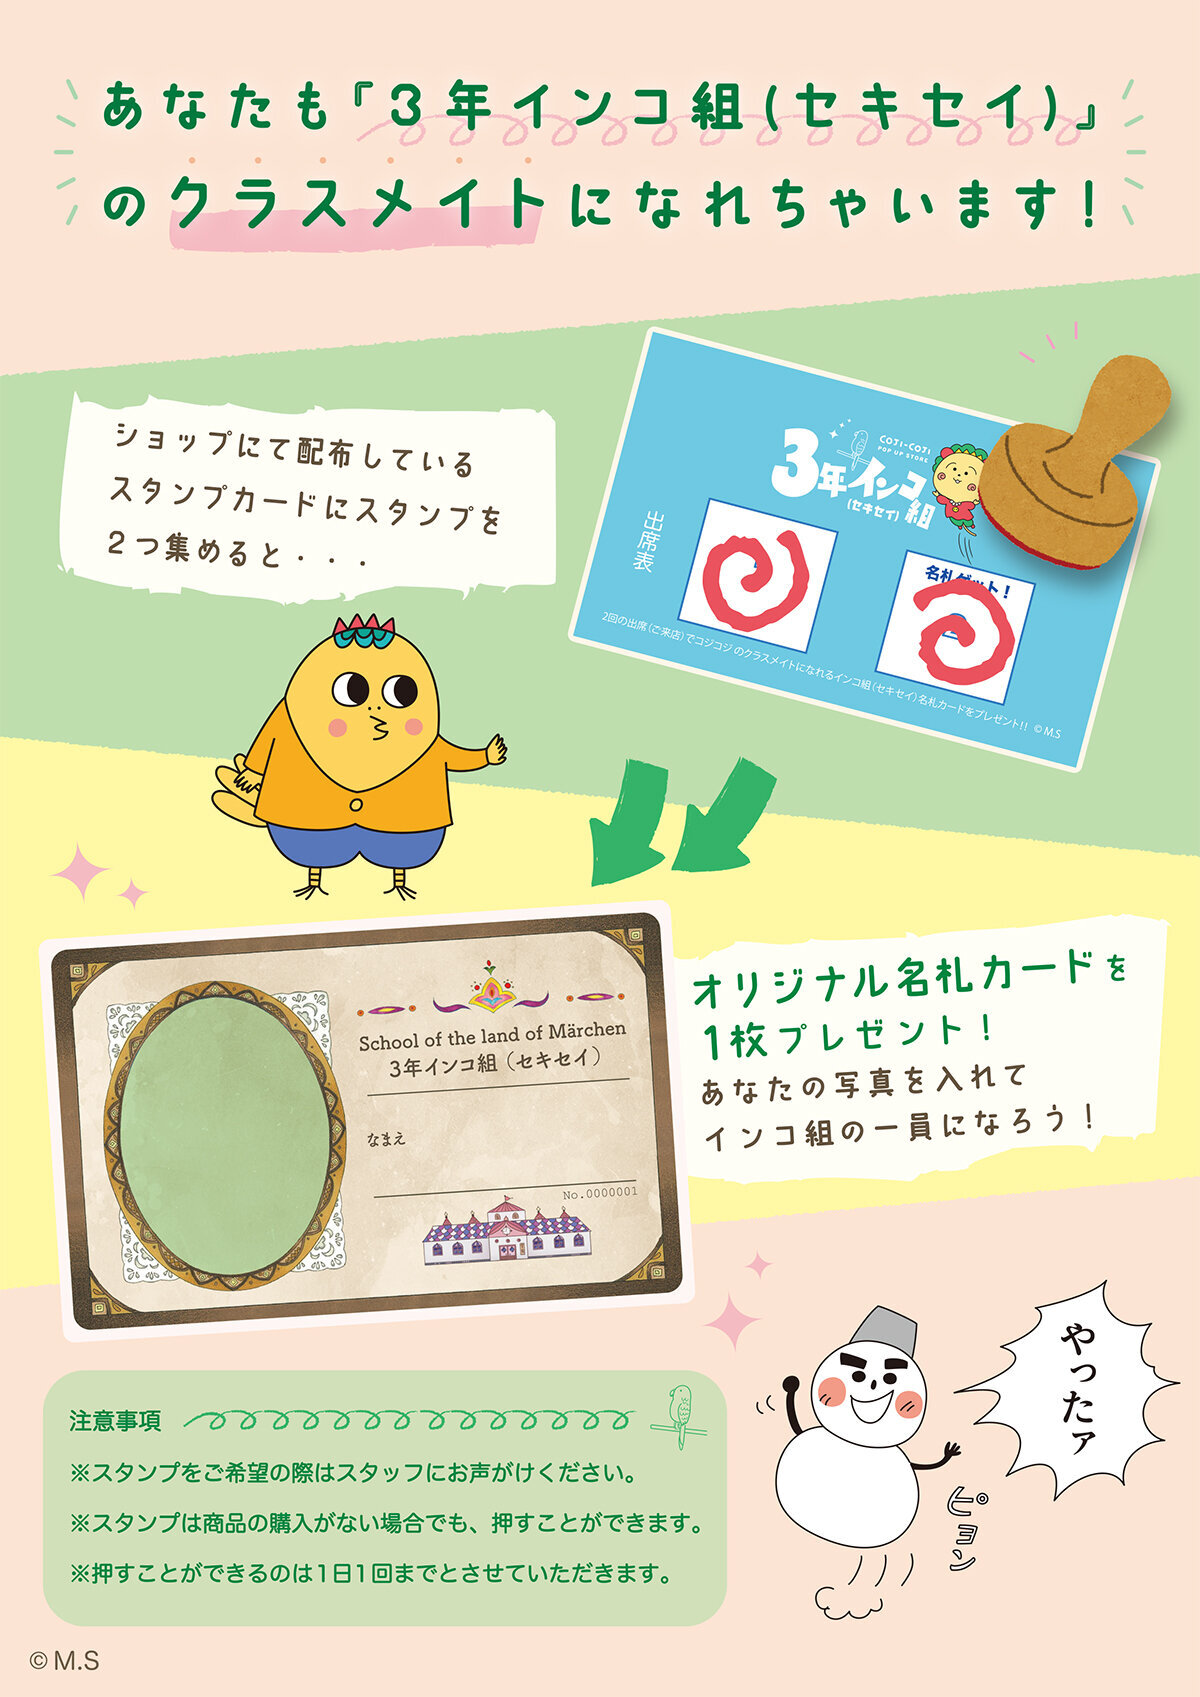 https://cojicoji.site/news/images/cojicoji_popup_shinjuku_stamp_1200.jpg